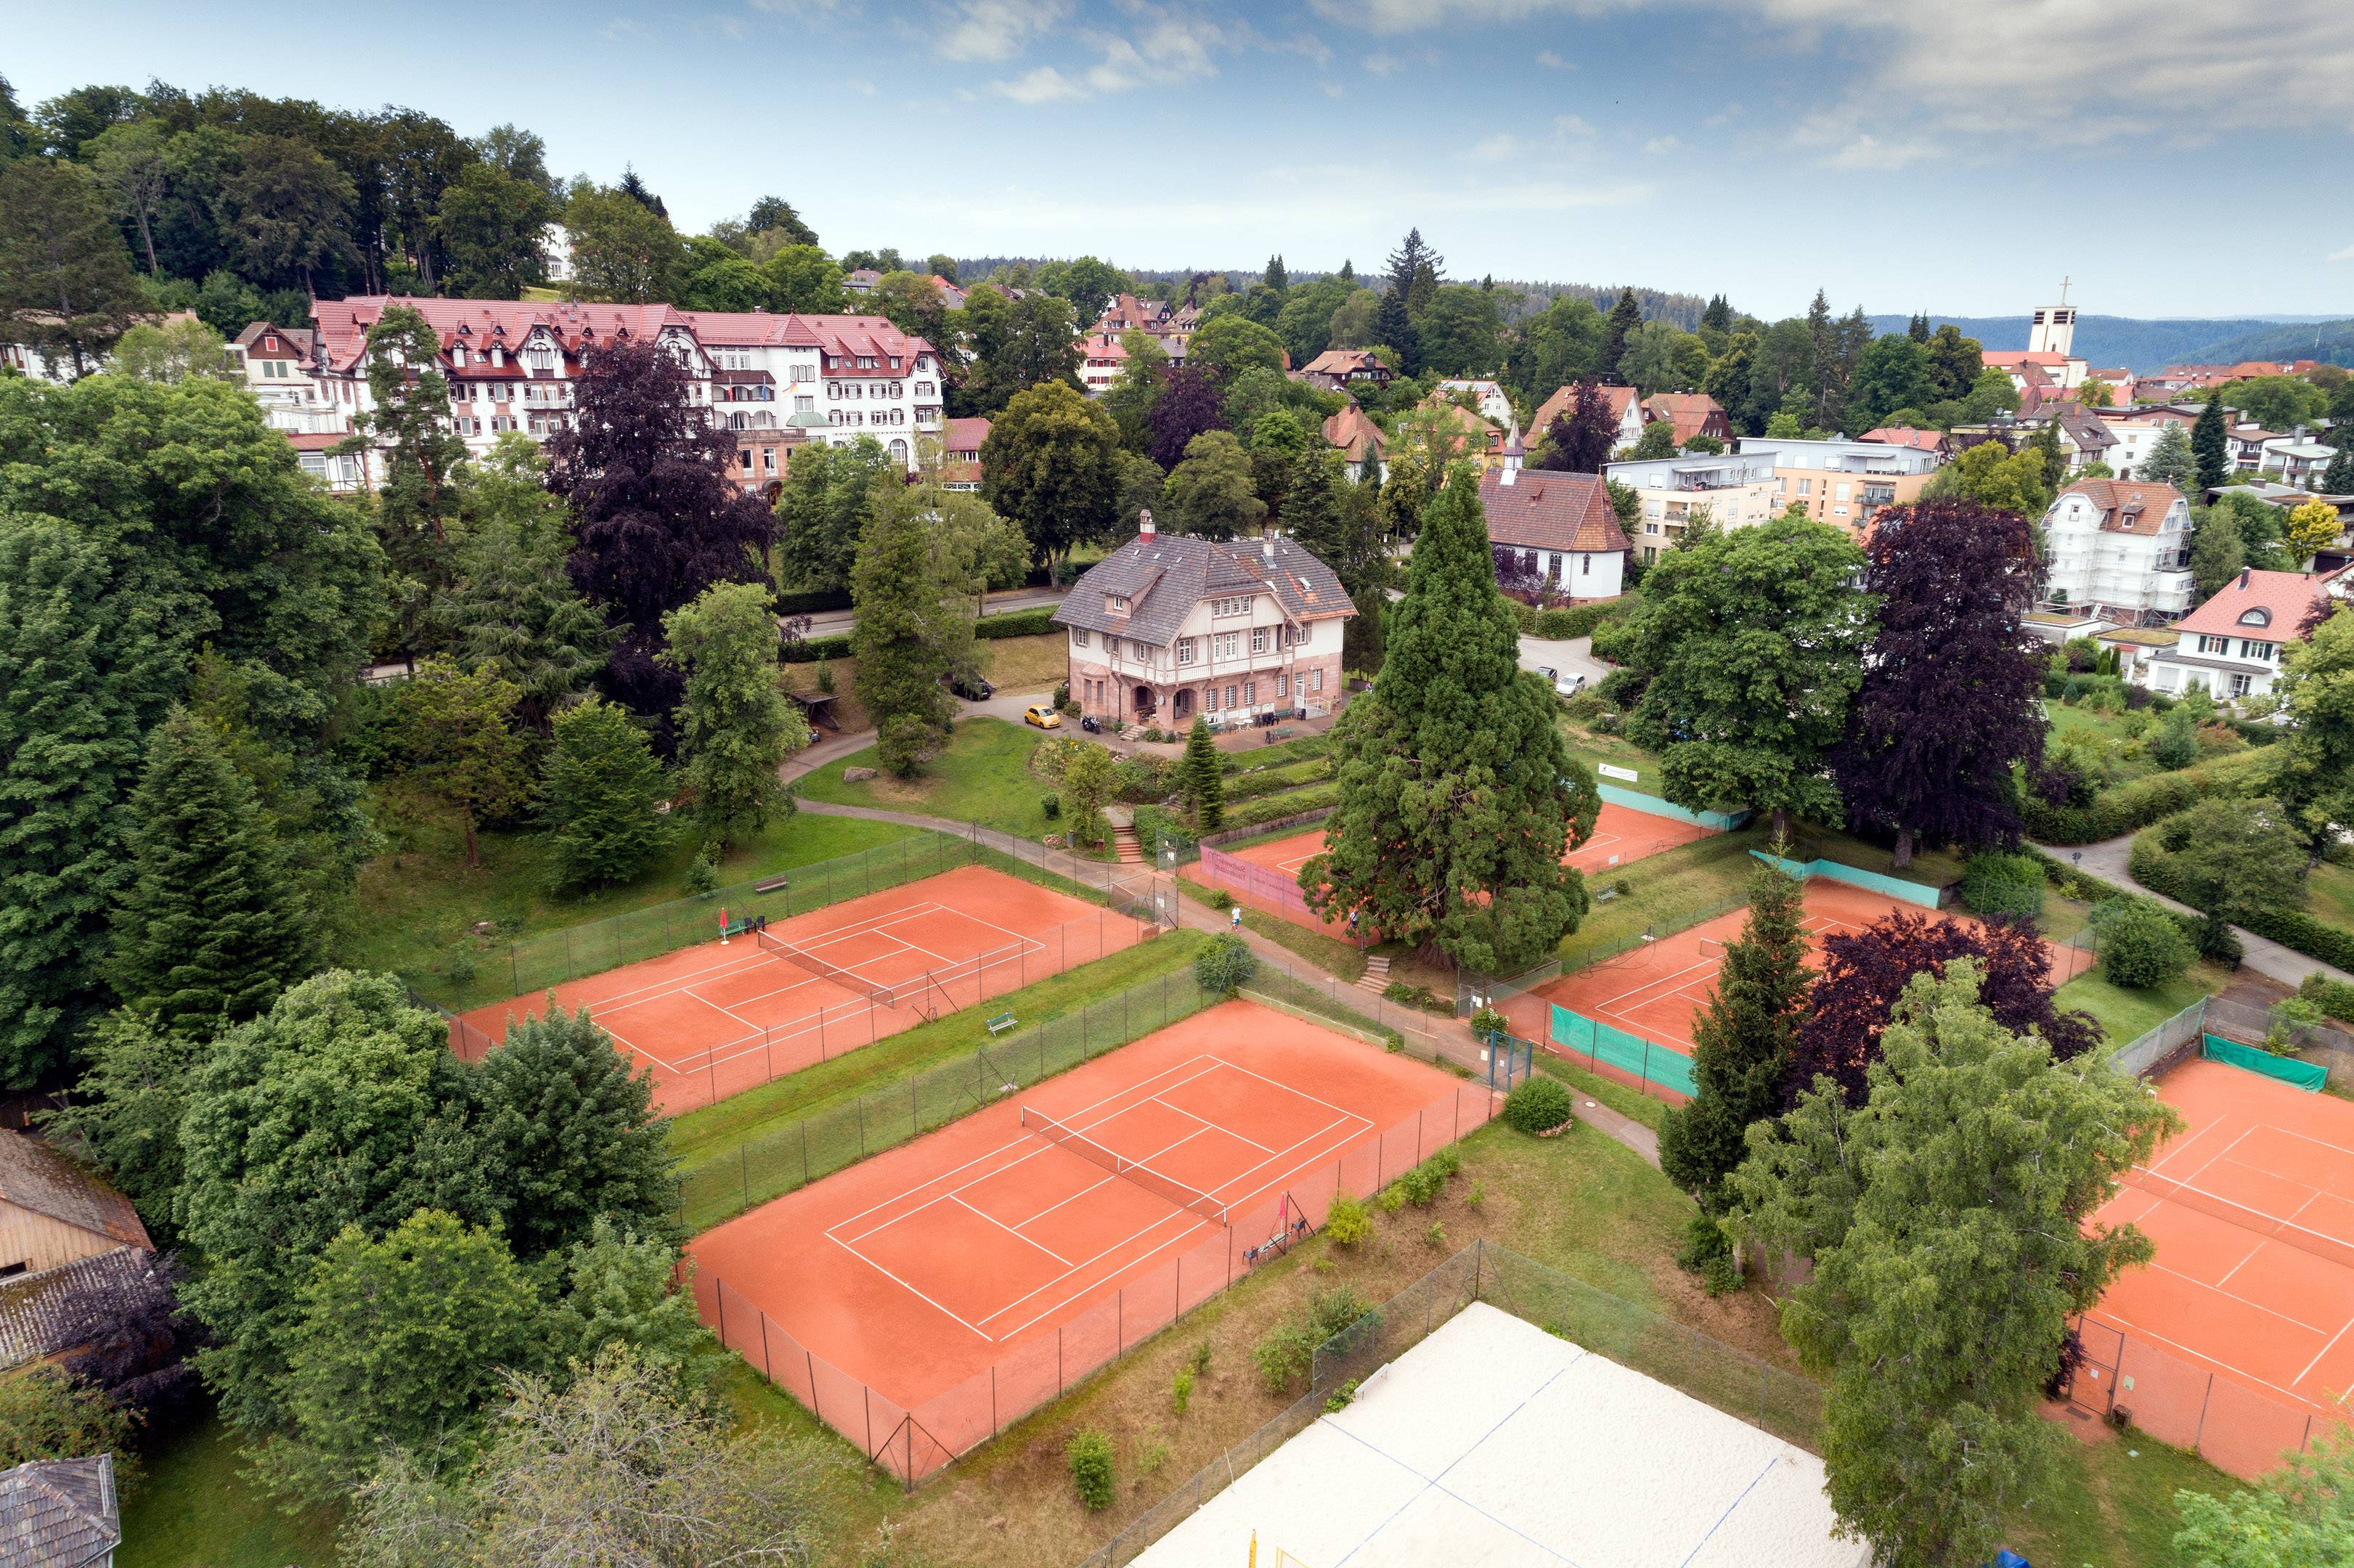 Tennis in Freudenstadt: For tennis lovers - Wellnesshotel Grüner Wald 4*S Freudenstadt